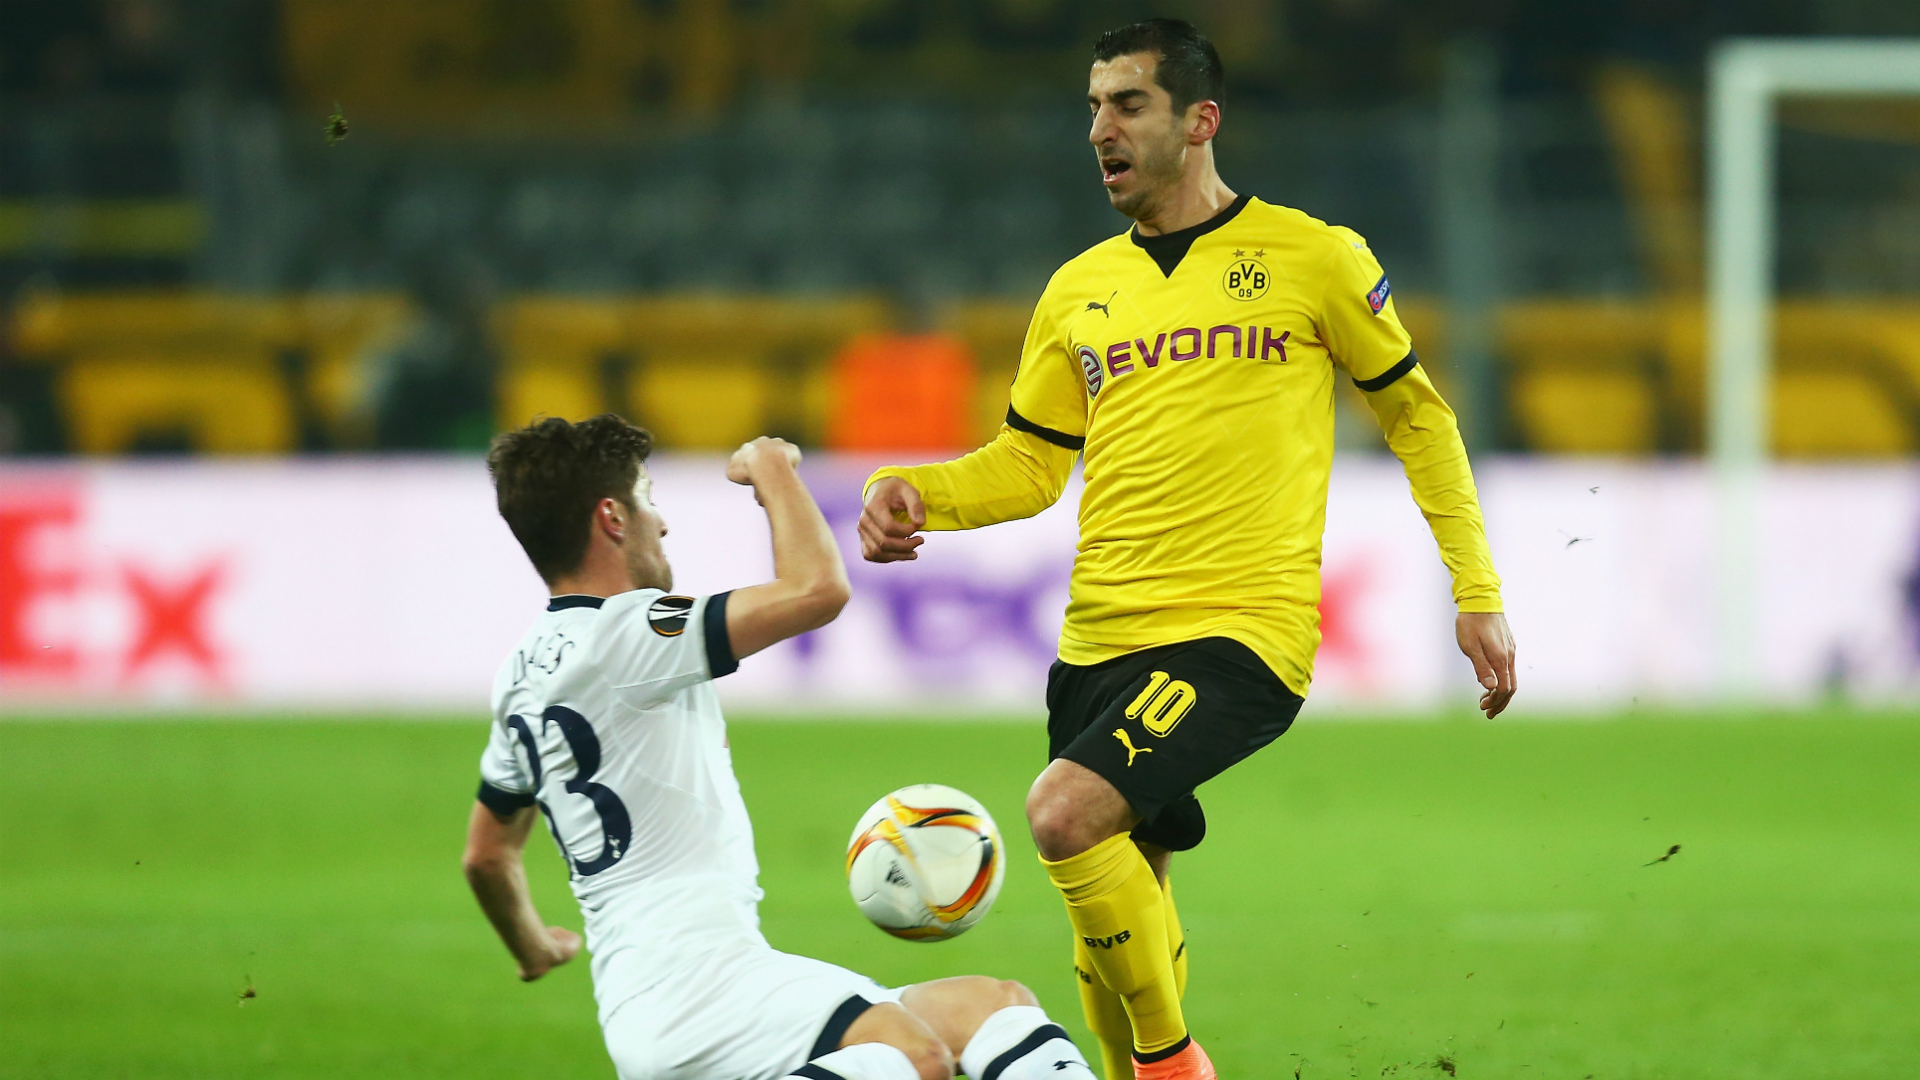 Dortmund's Henrikh Mkhitaryan named DW Player of the Season – DW